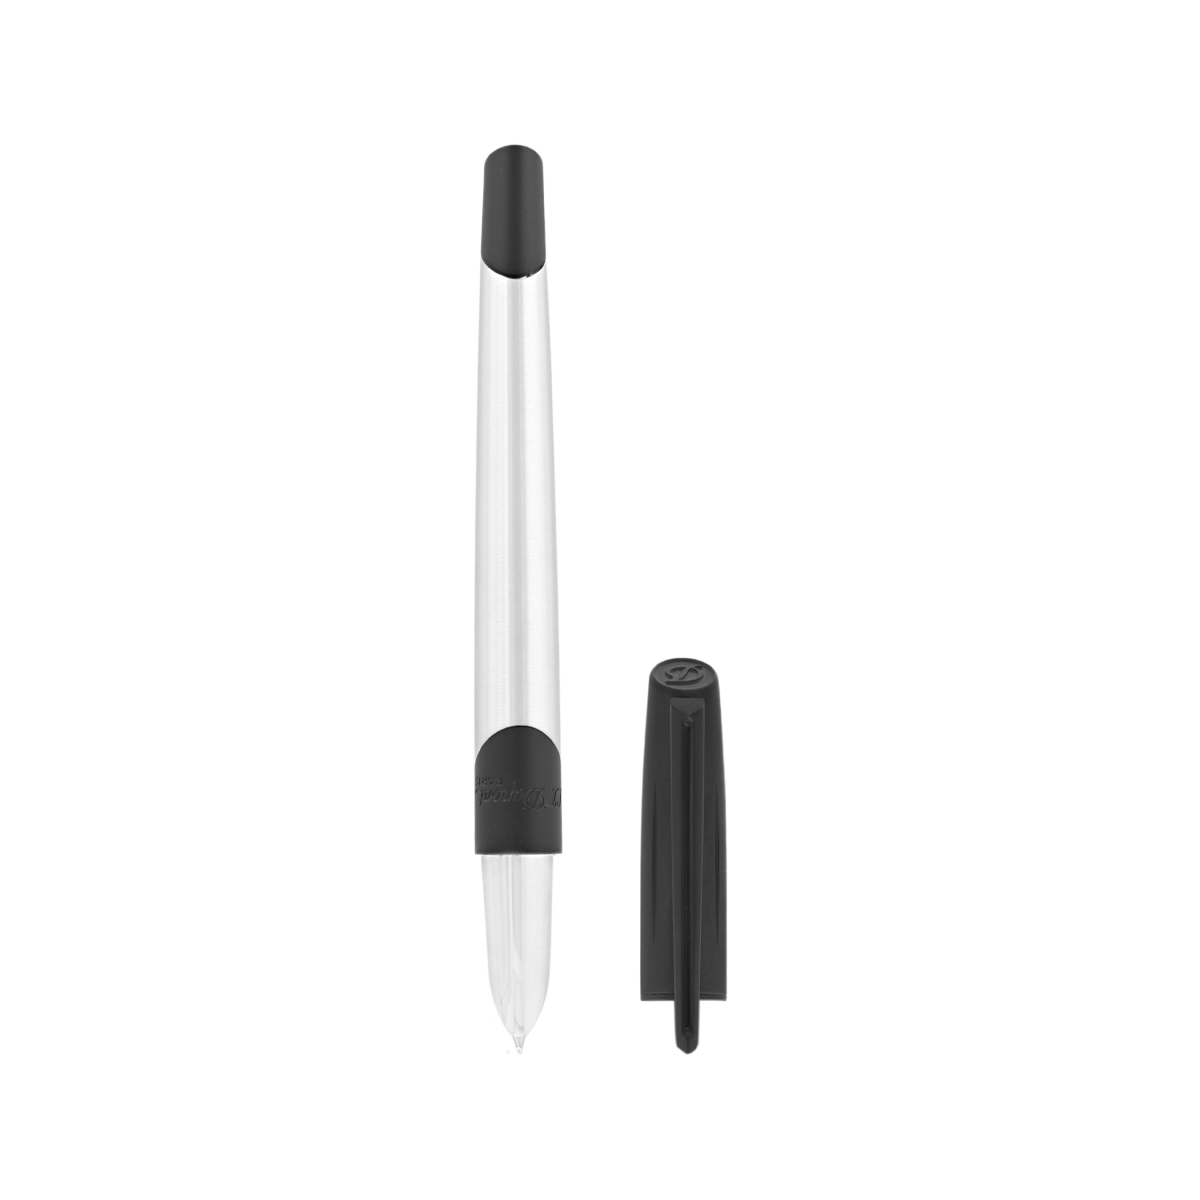 Перьевая ручка Defi Millenium 400004 Цвет Чёрный Матовый хром, матовое PVD-покрытие | S.T. Dupont